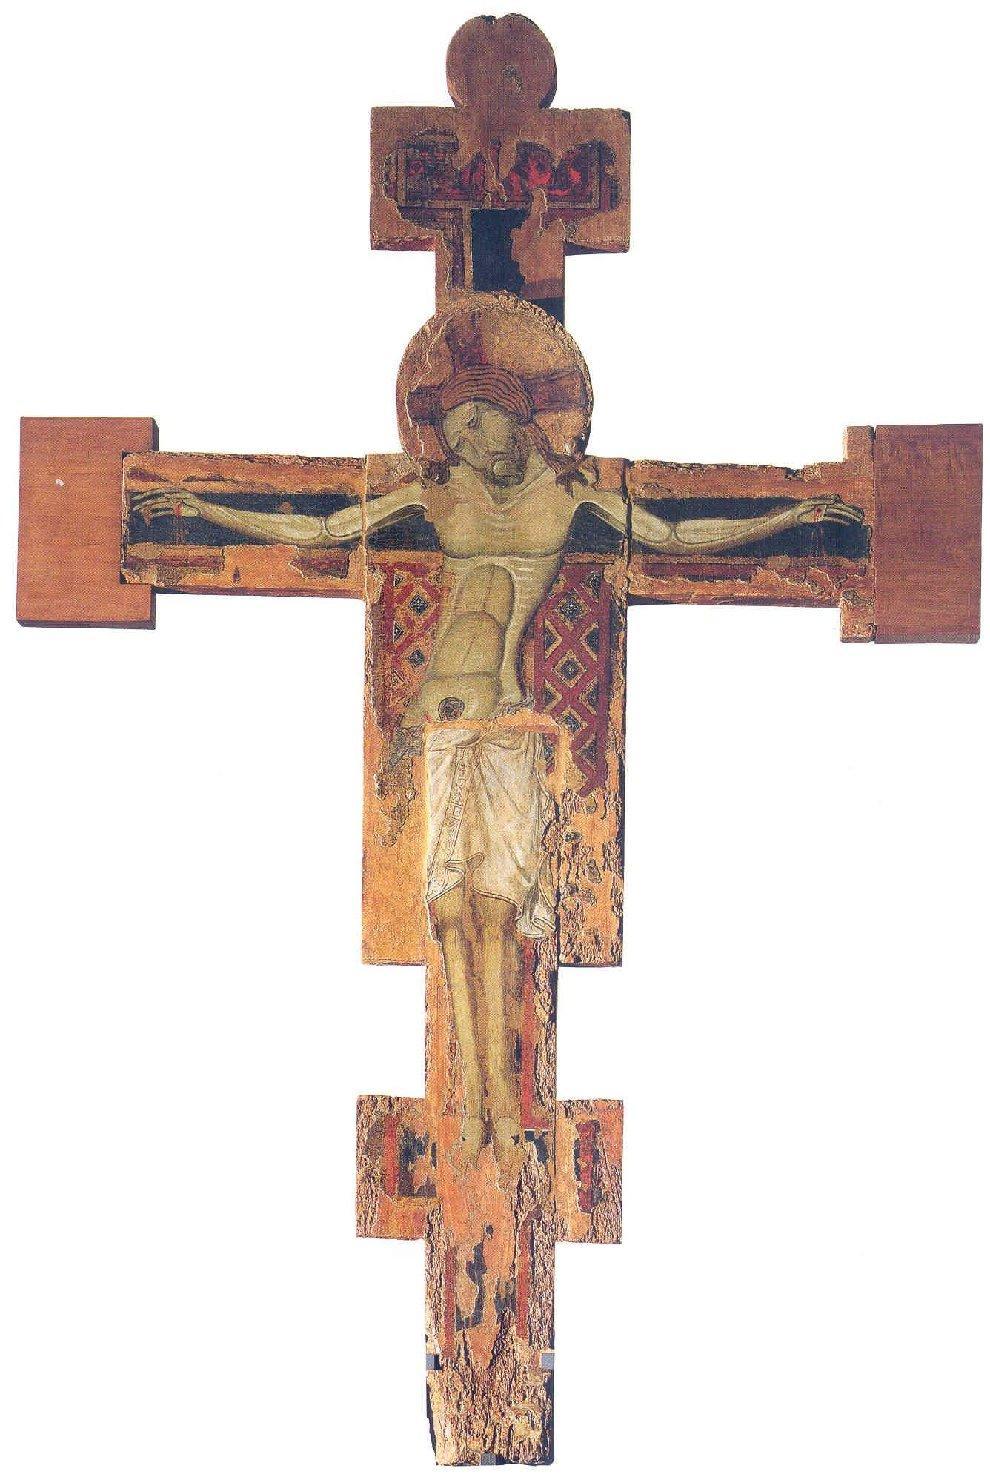 CRISTO CROCIFISSO (croce dipinta) di Giunta di Capitino da Pisa detto Giunta Pisano (attribuito) (metà sec. XIII)